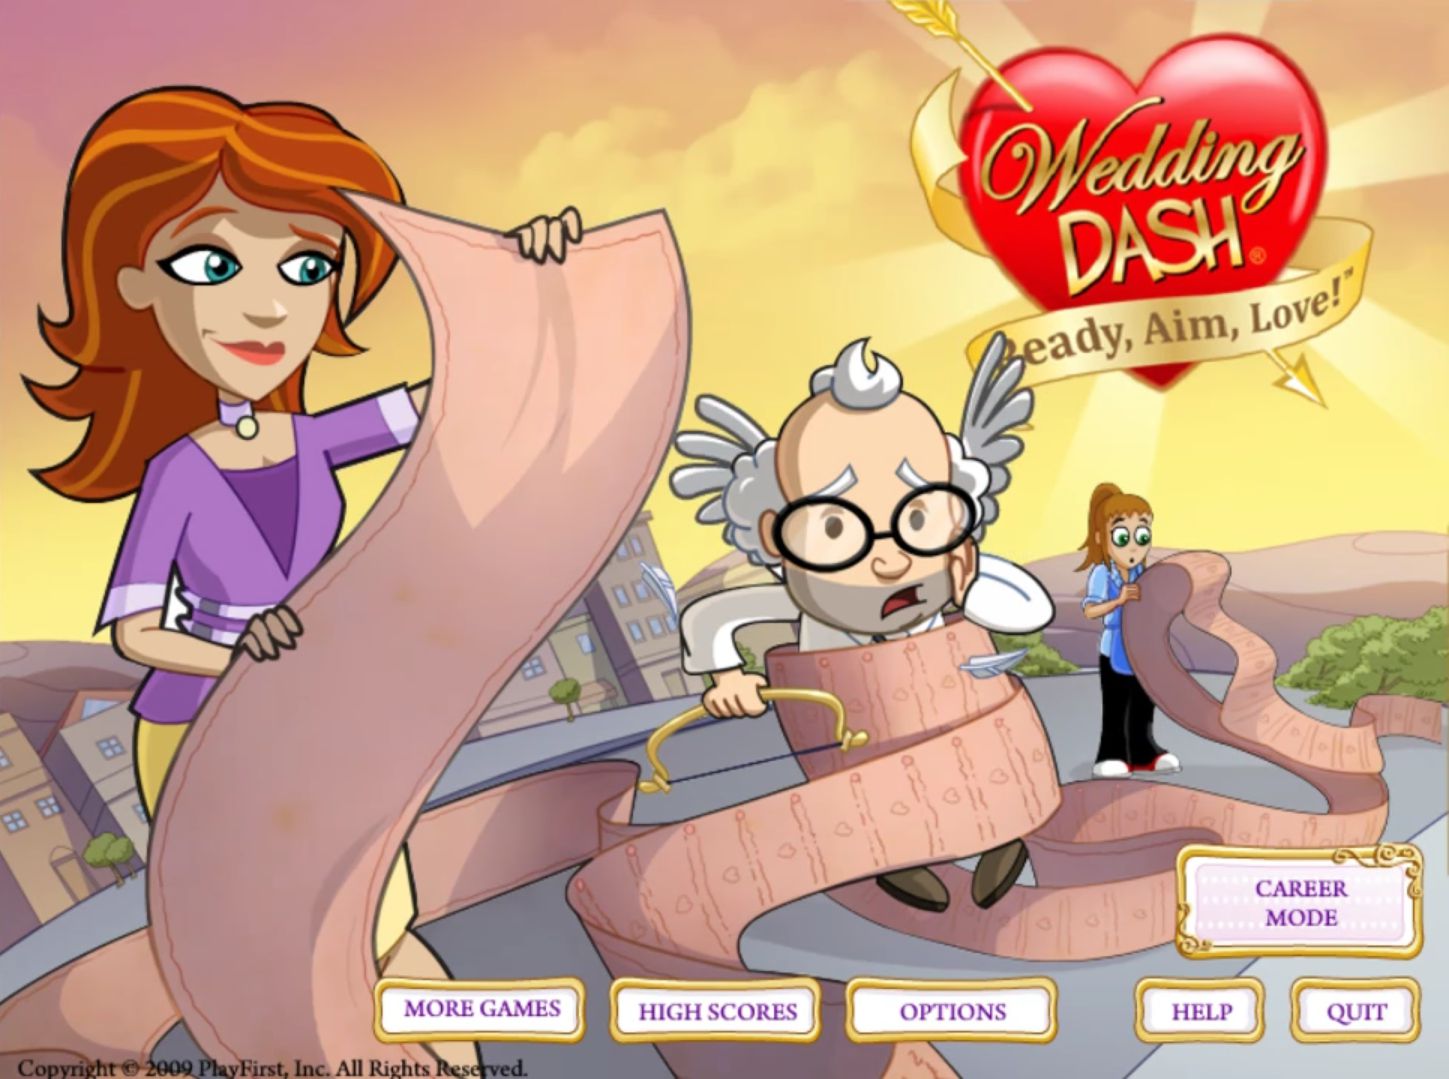 Wedding Dash: Ready, Aim, Love! Game Cover